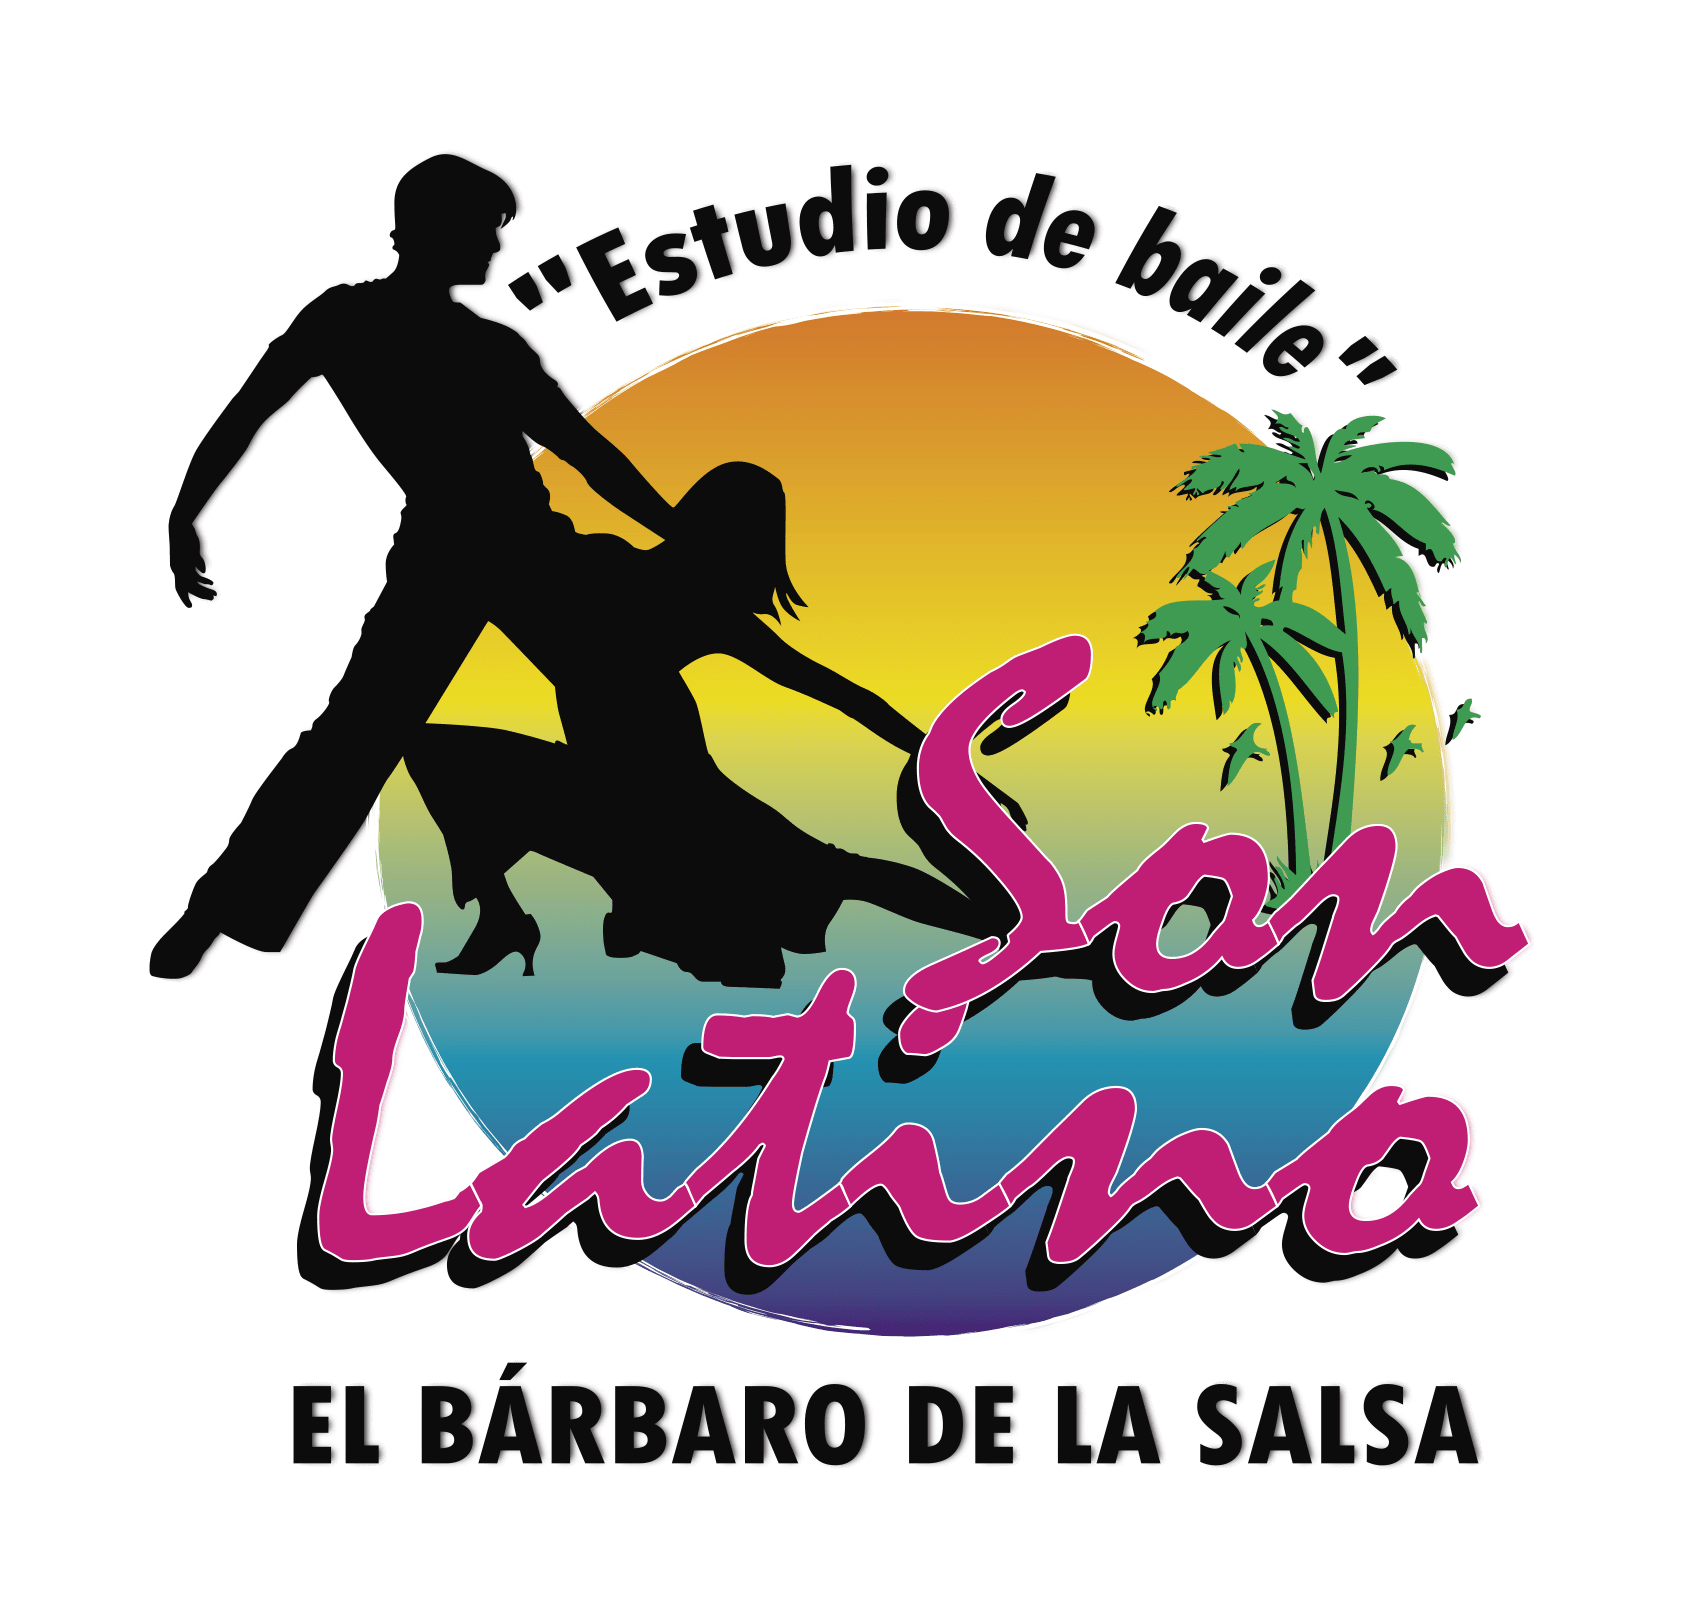 Estudio de Baile Son Latino